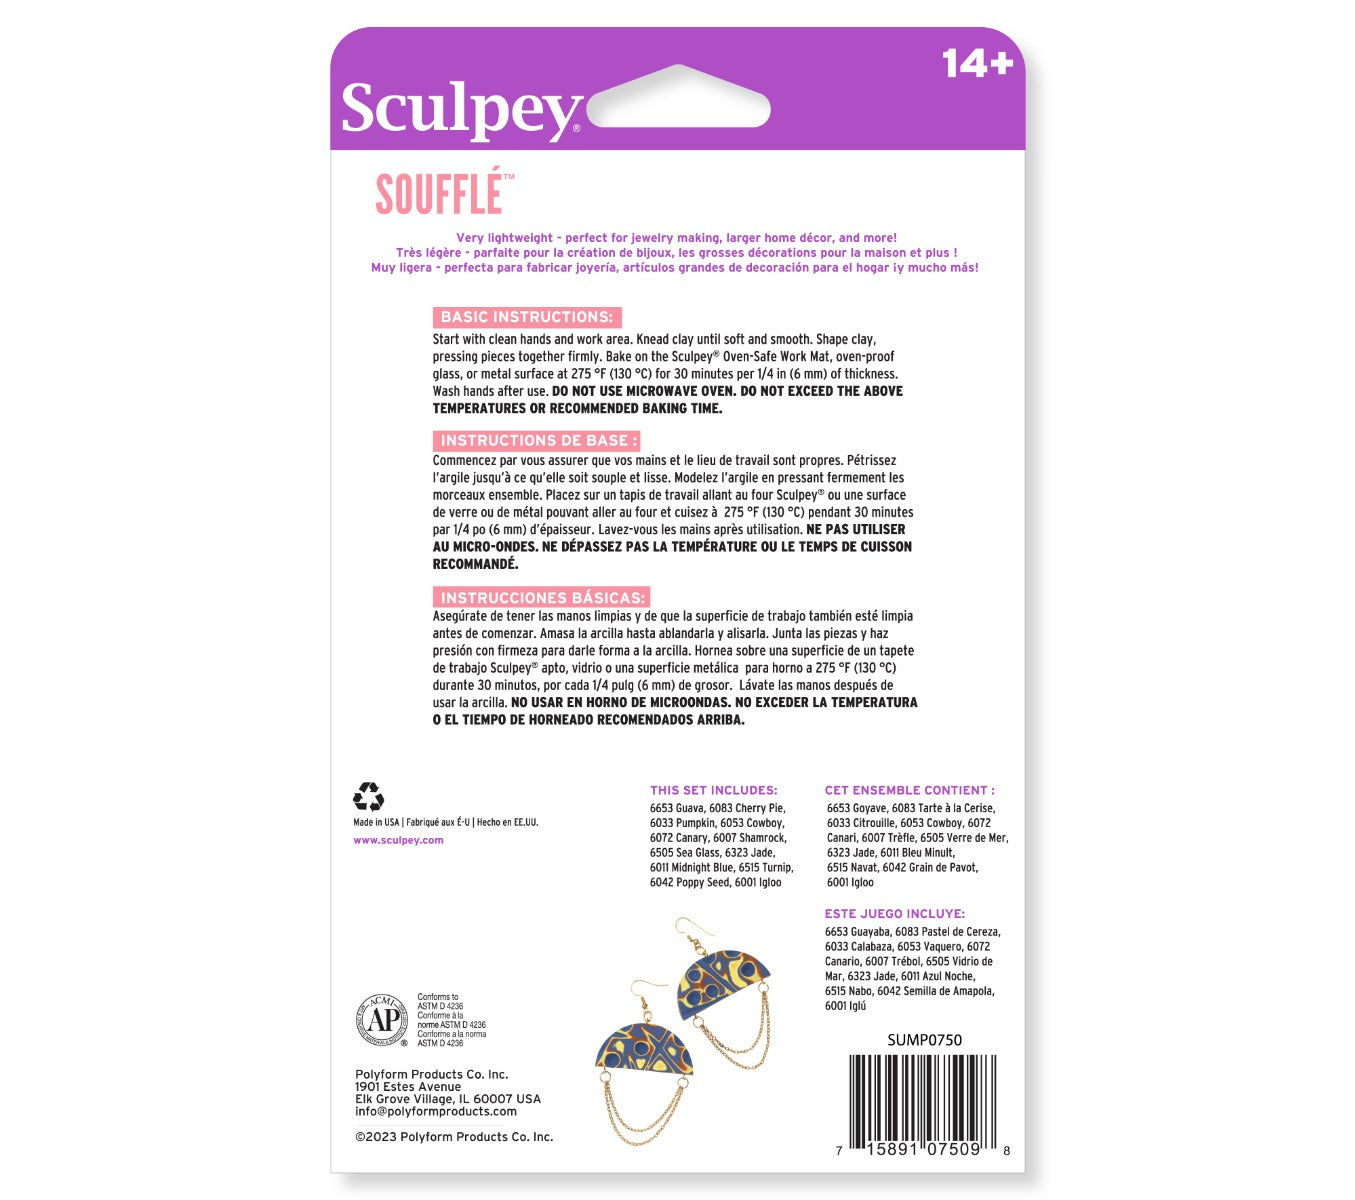 Sculpey Souffle Clay 2 oz - Canary